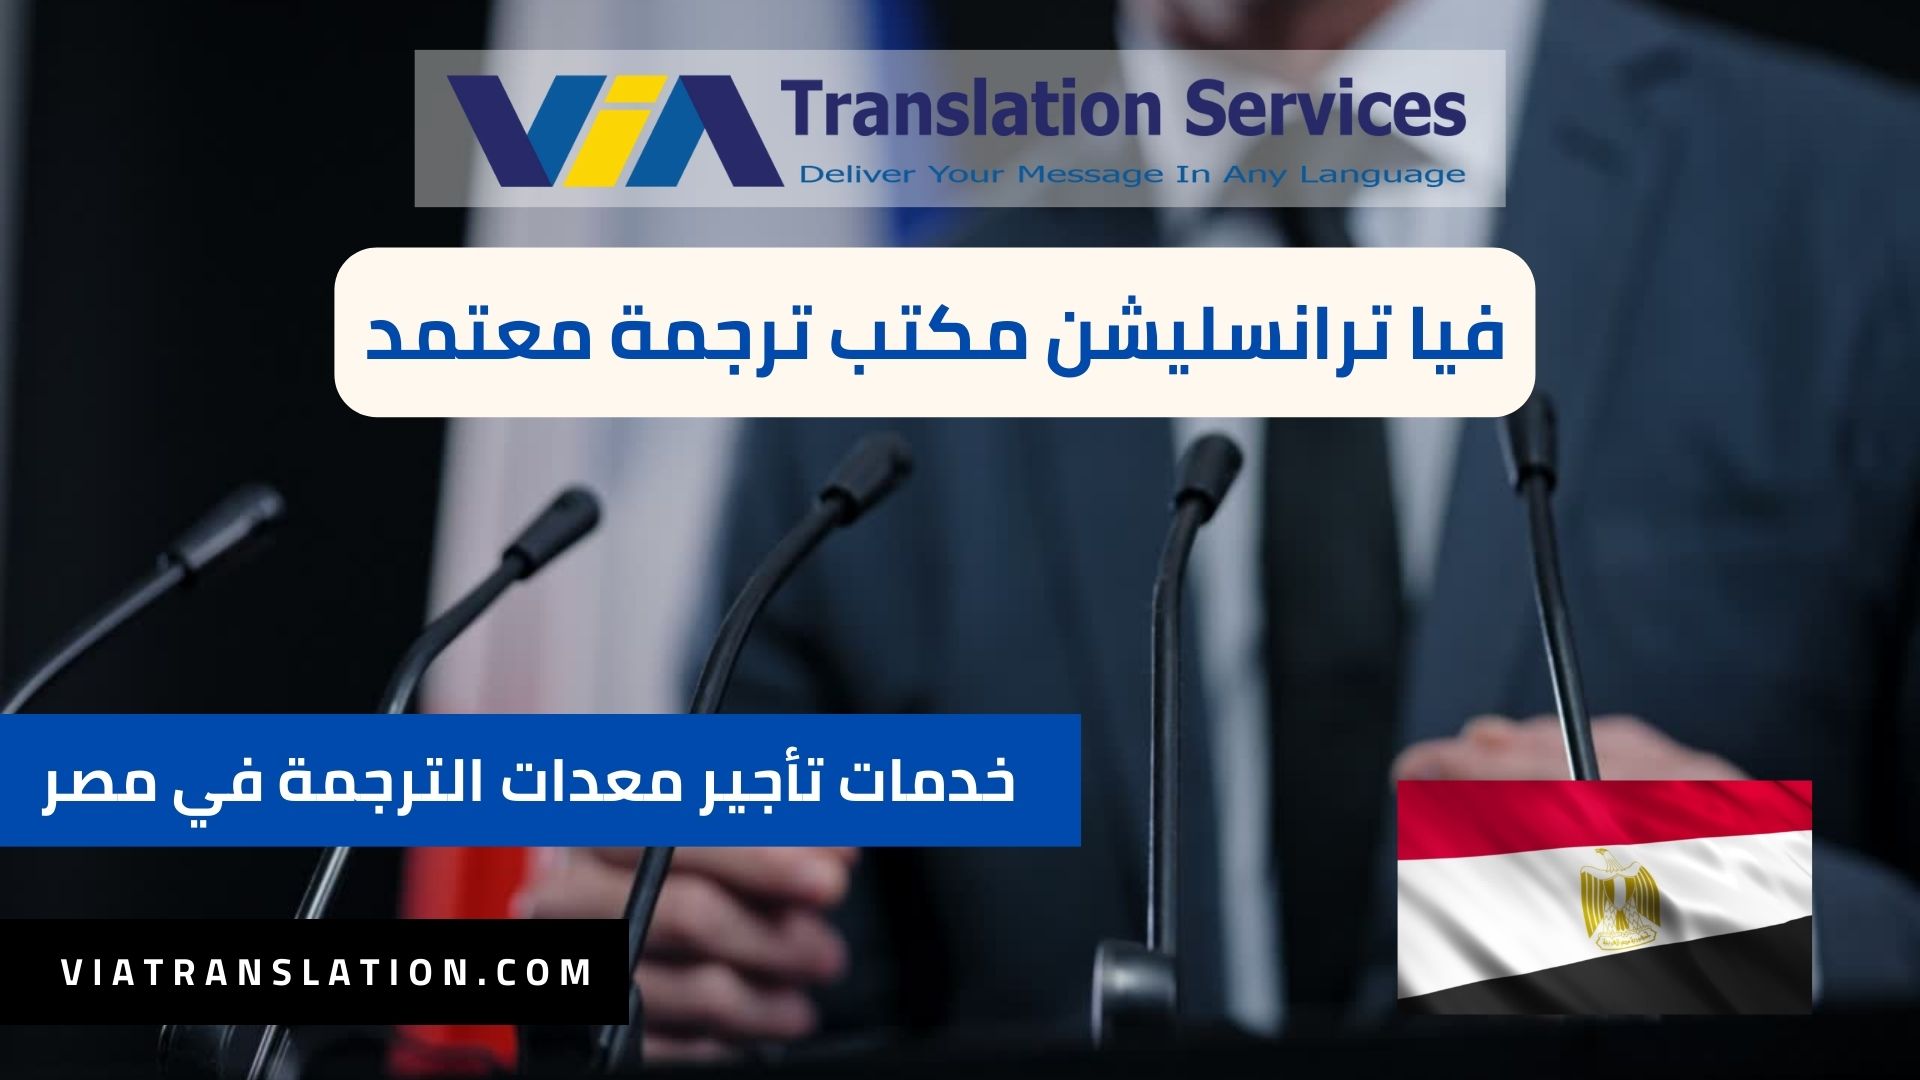 خدمات تأجير معدات الترجمة الفورية والمؤتمرات في مصر 